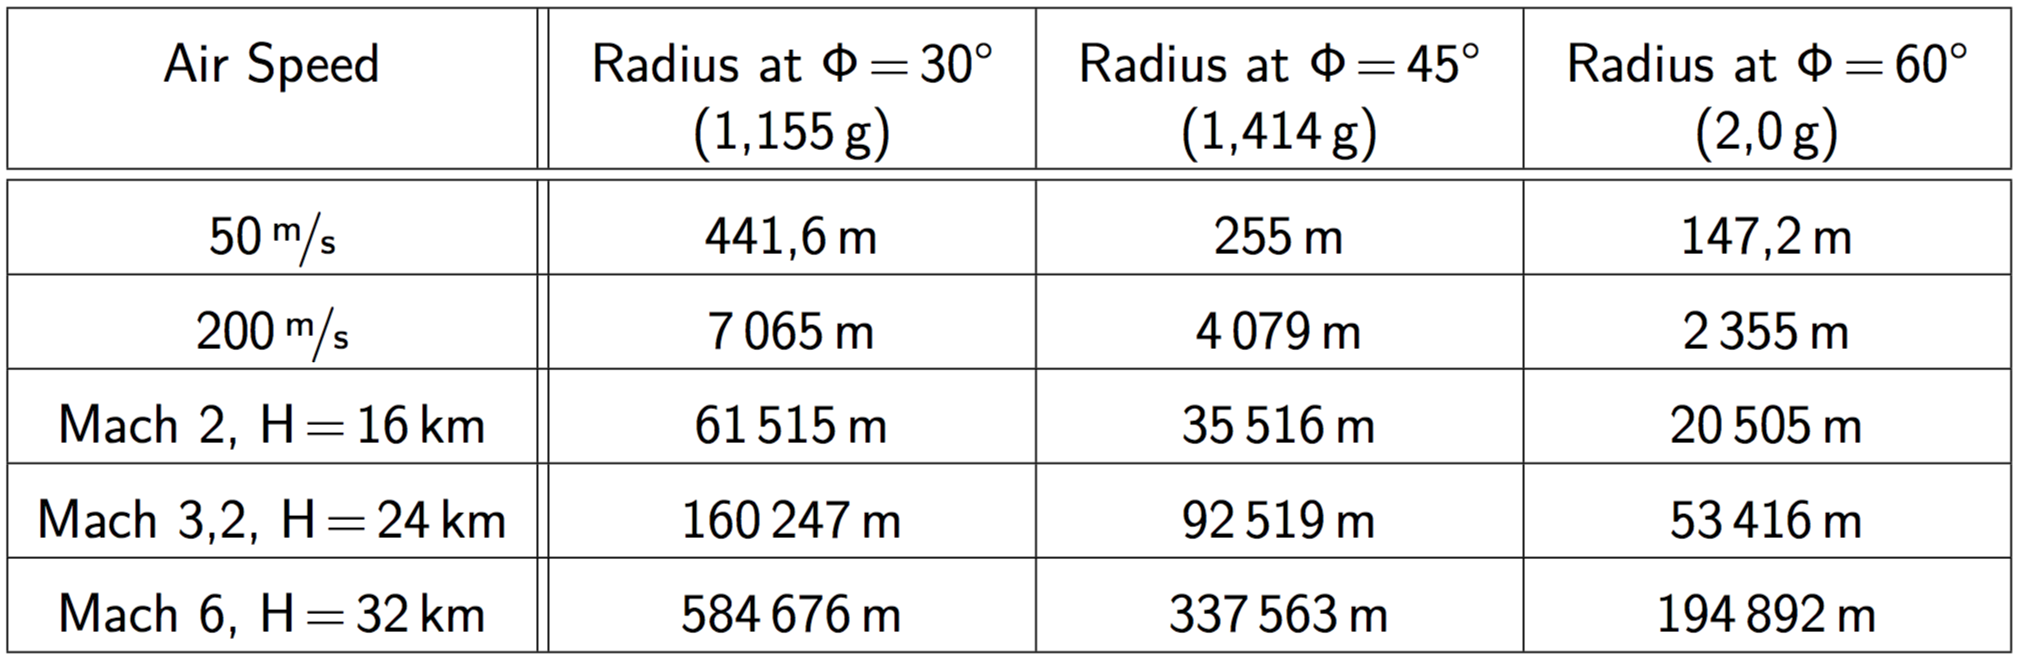 таблица радиусов превышения скорости